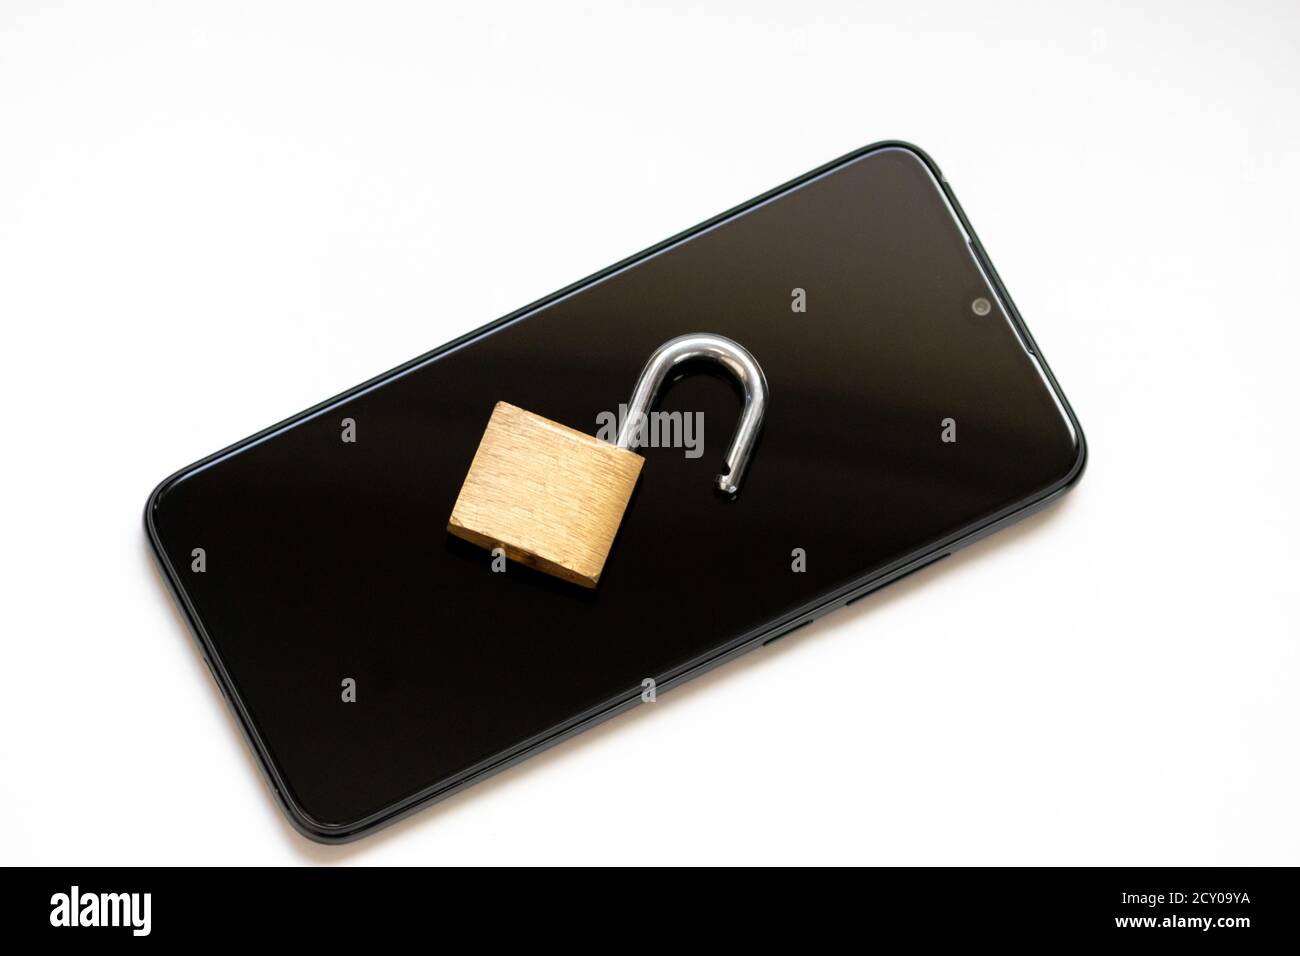 Le chiffrement vulnérable et la cyber-sécurité présentent un verrou de clé ouvert sur un smartphone noir pour les attaques de pirates ou les cyberattaques la protection en tant qu'entreprise de sécurité Banque D'Images